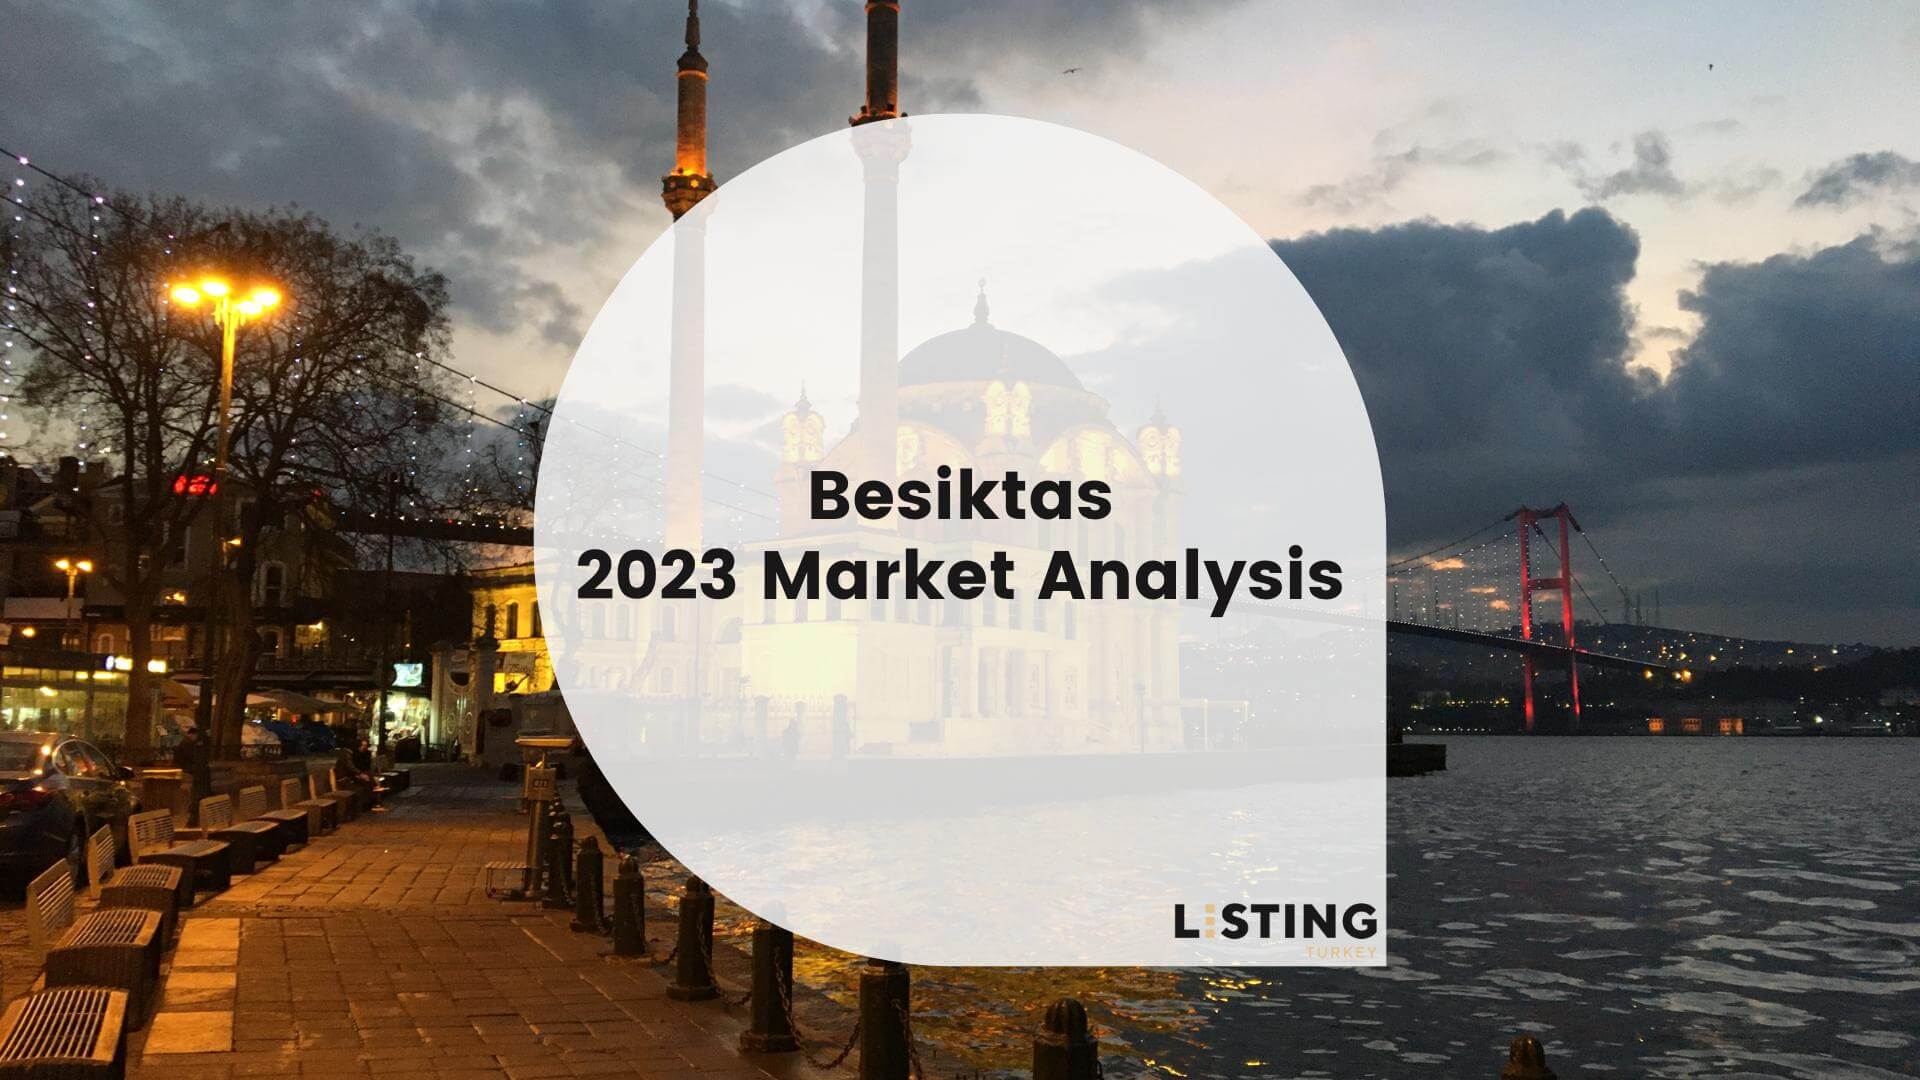 Besiktas 2023 Market Analysis